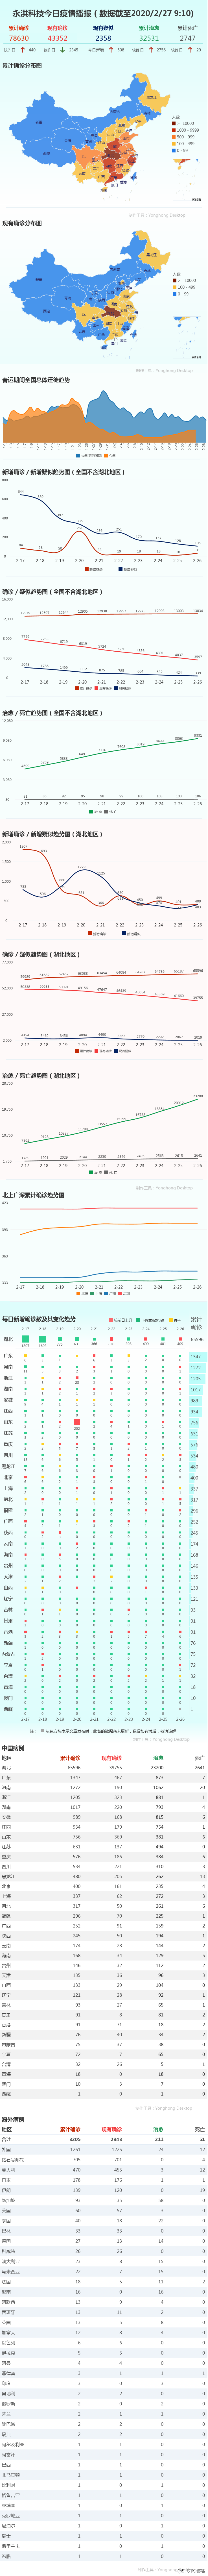 武汉新增死亡病例创近11天最低，新的转折来了？ | 2月27日疫情播报